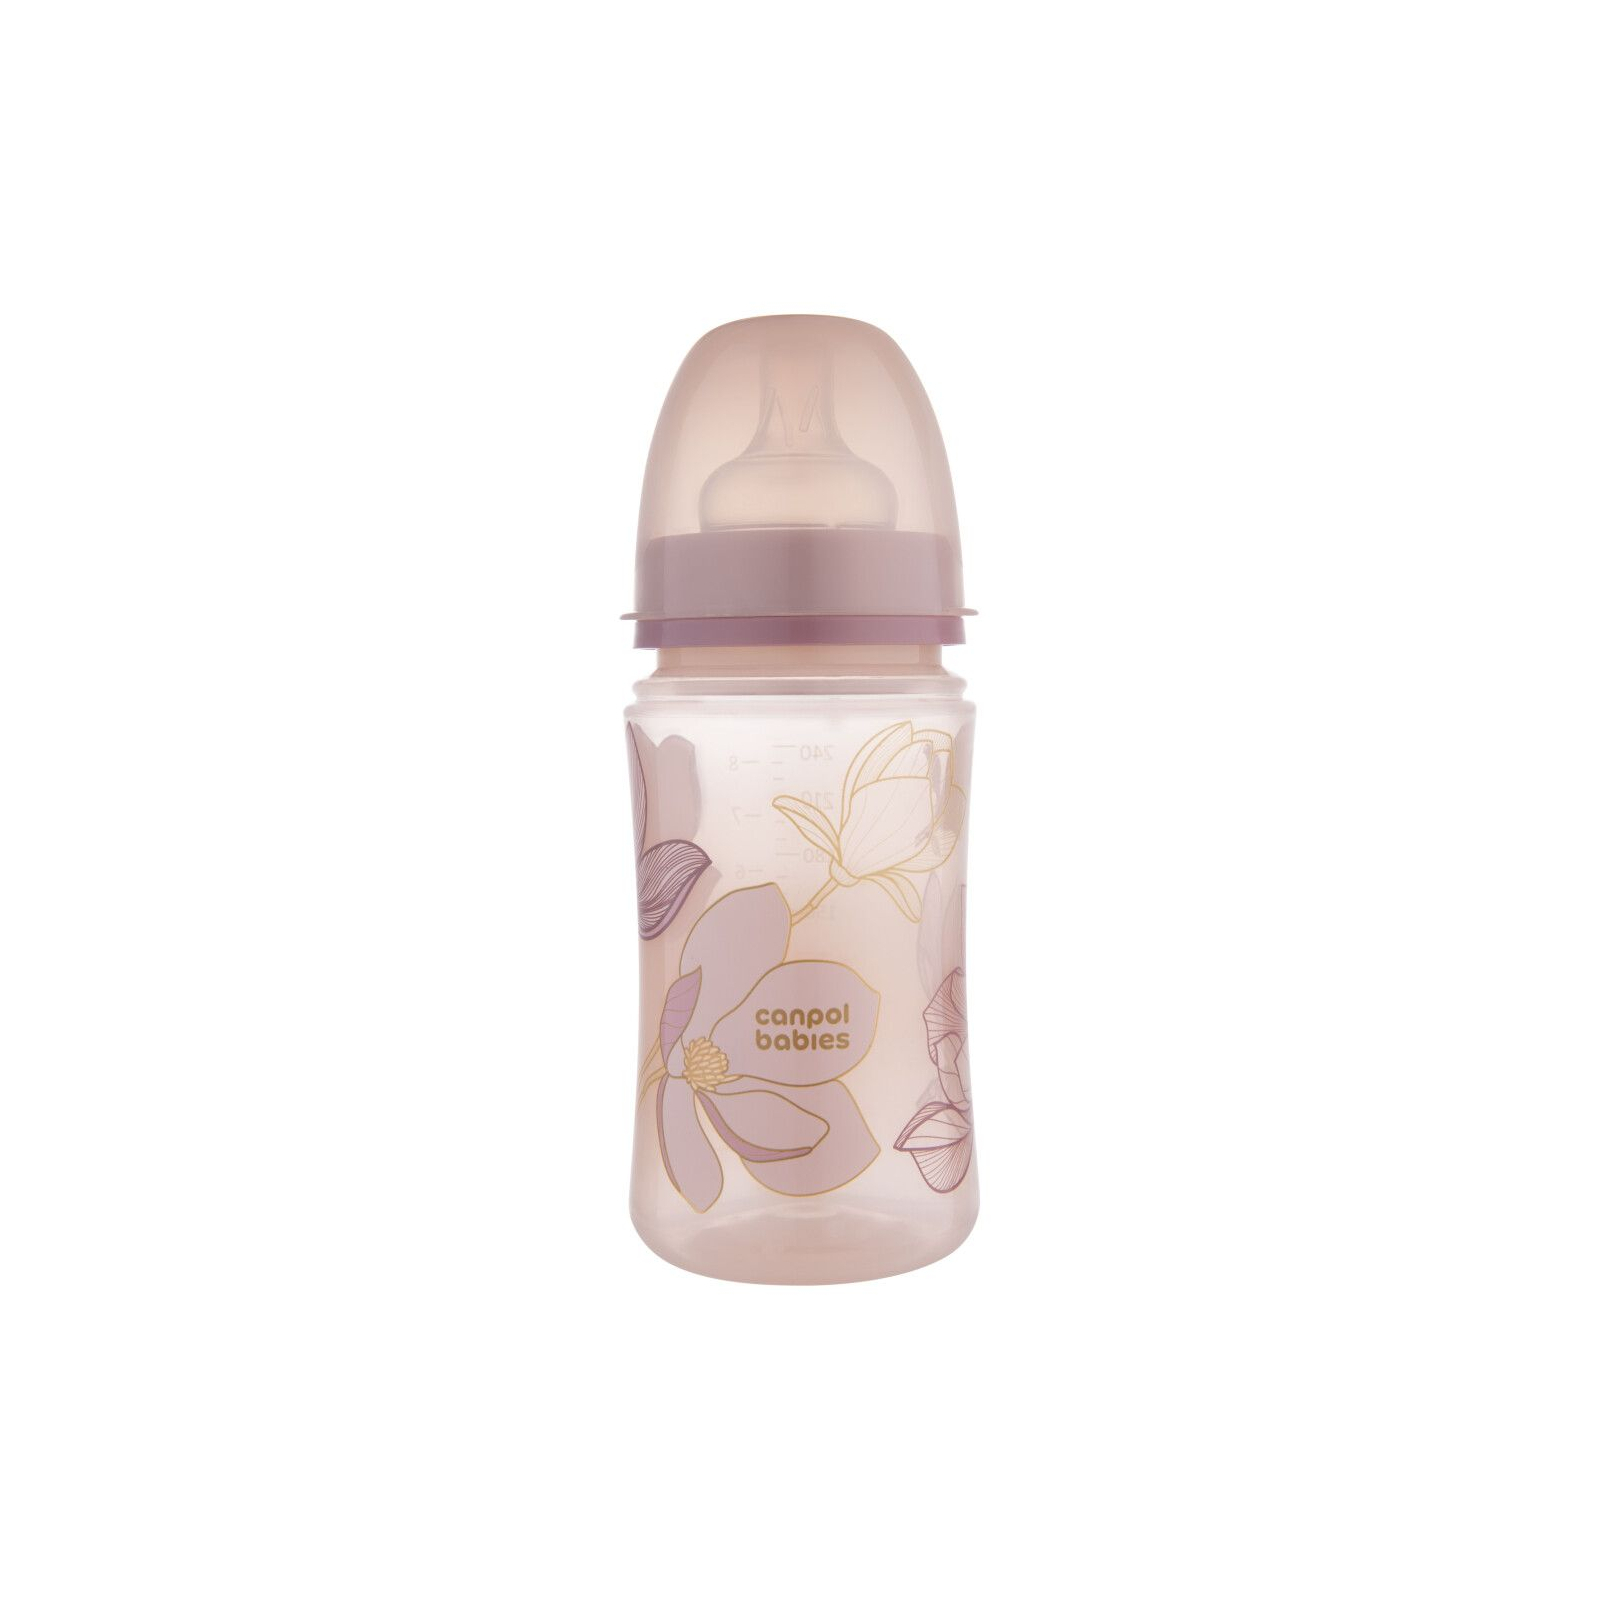 Бутылочка для кормления Canpol babies Easystart GOLD 240 мл антикол. с широким отверстием, розовая (35/240_pin)